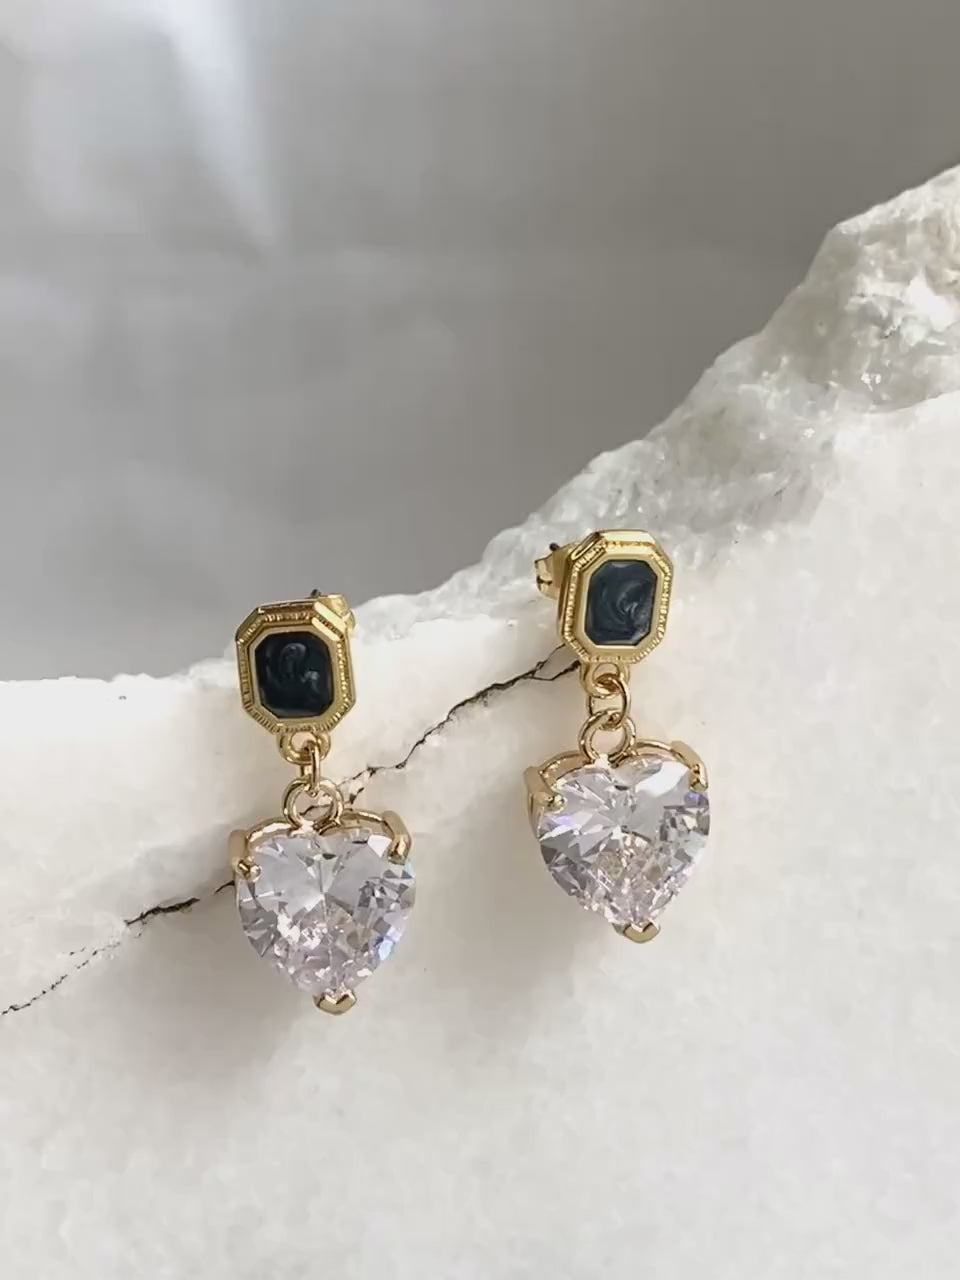 Crystal Heart Earrings Retro Style Heart Earrings Dangle Earrings Vintage Style Saint Valentine Gift for Her Zircon Heart Earrings